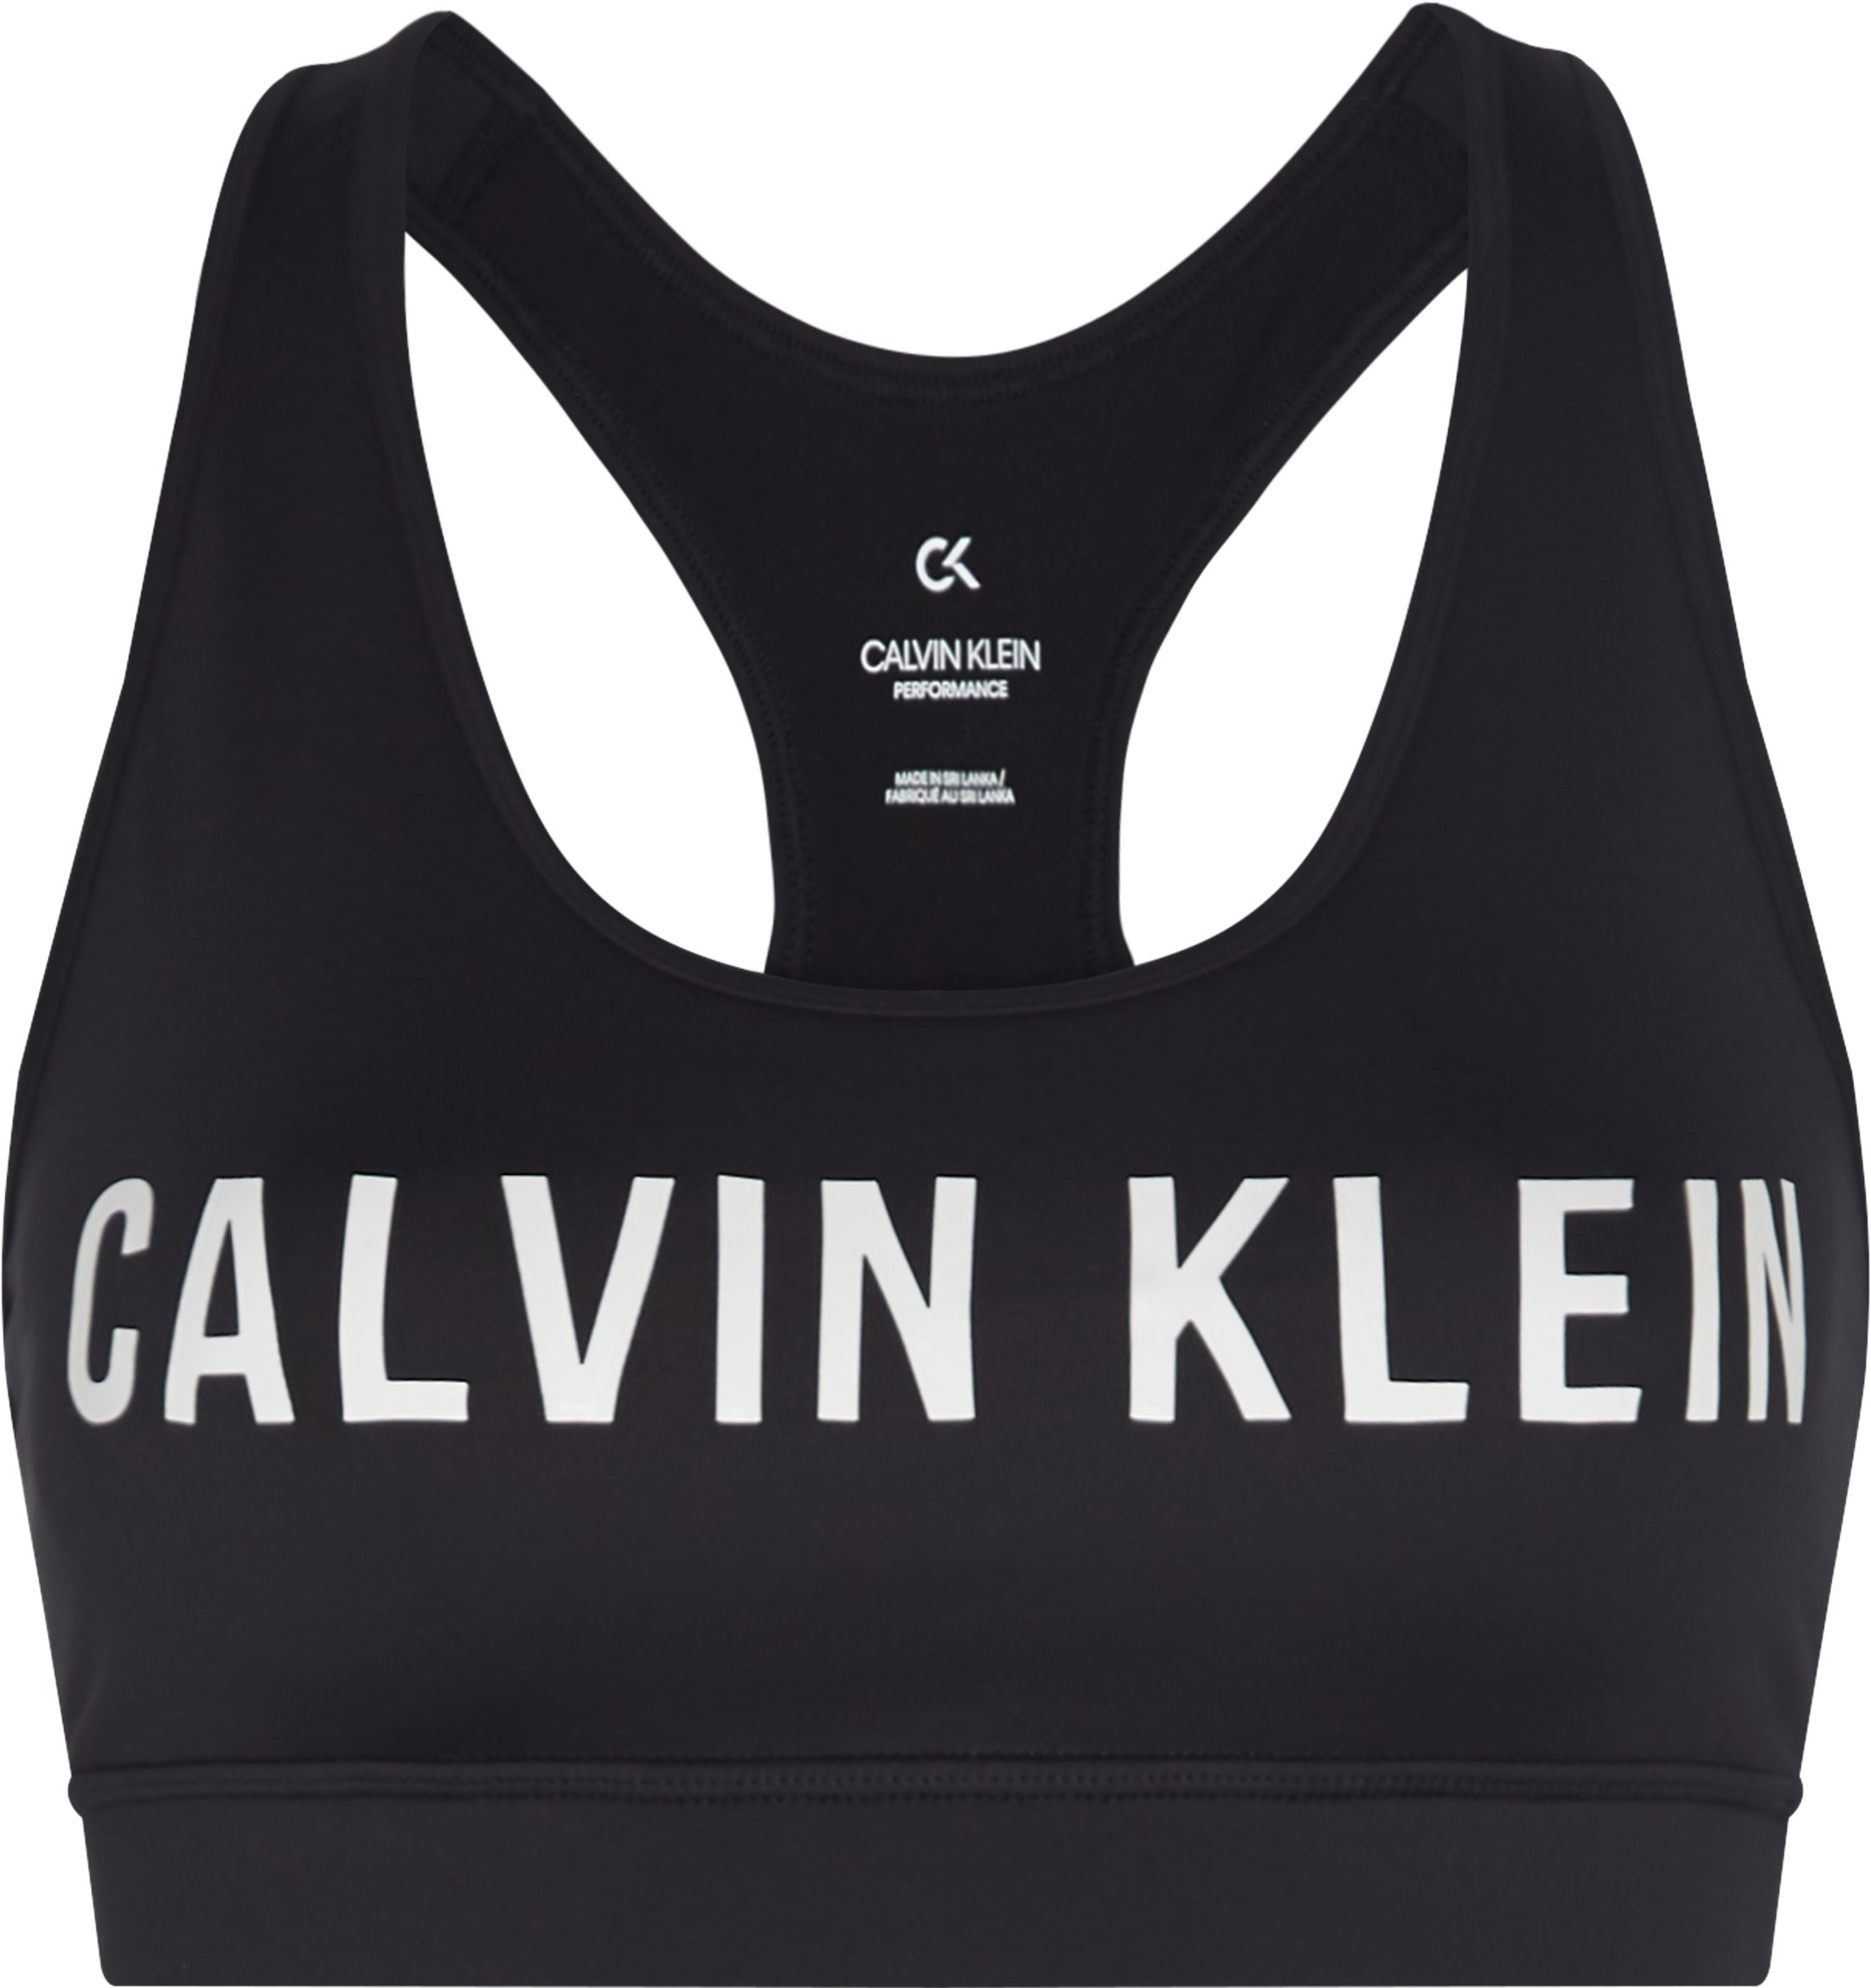 Calvin Klein MEDIUM SUPPORT BRA